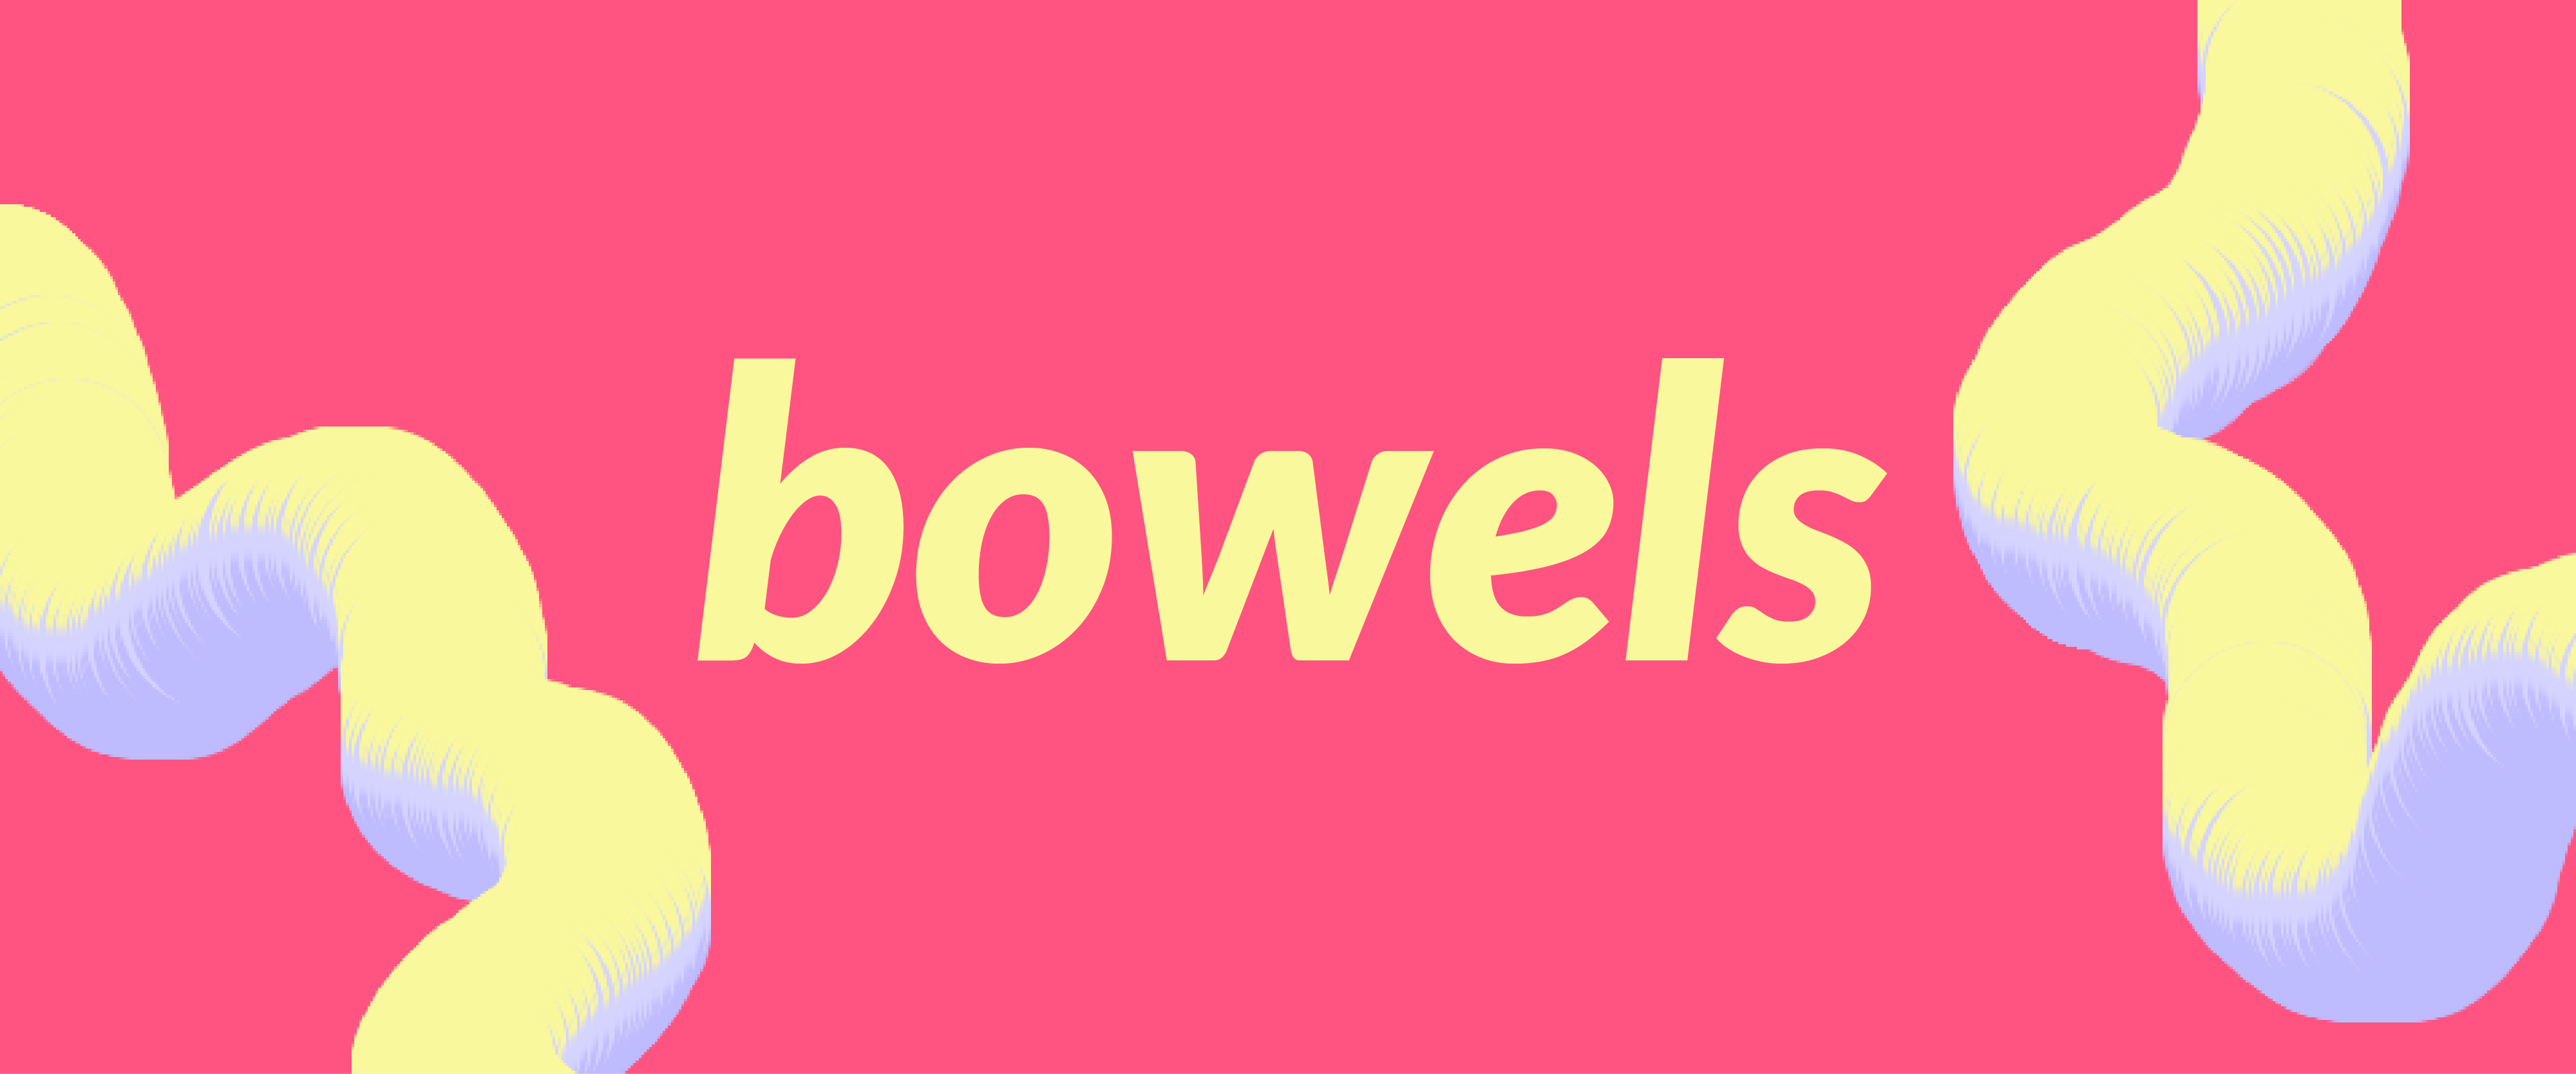 ~bowels~